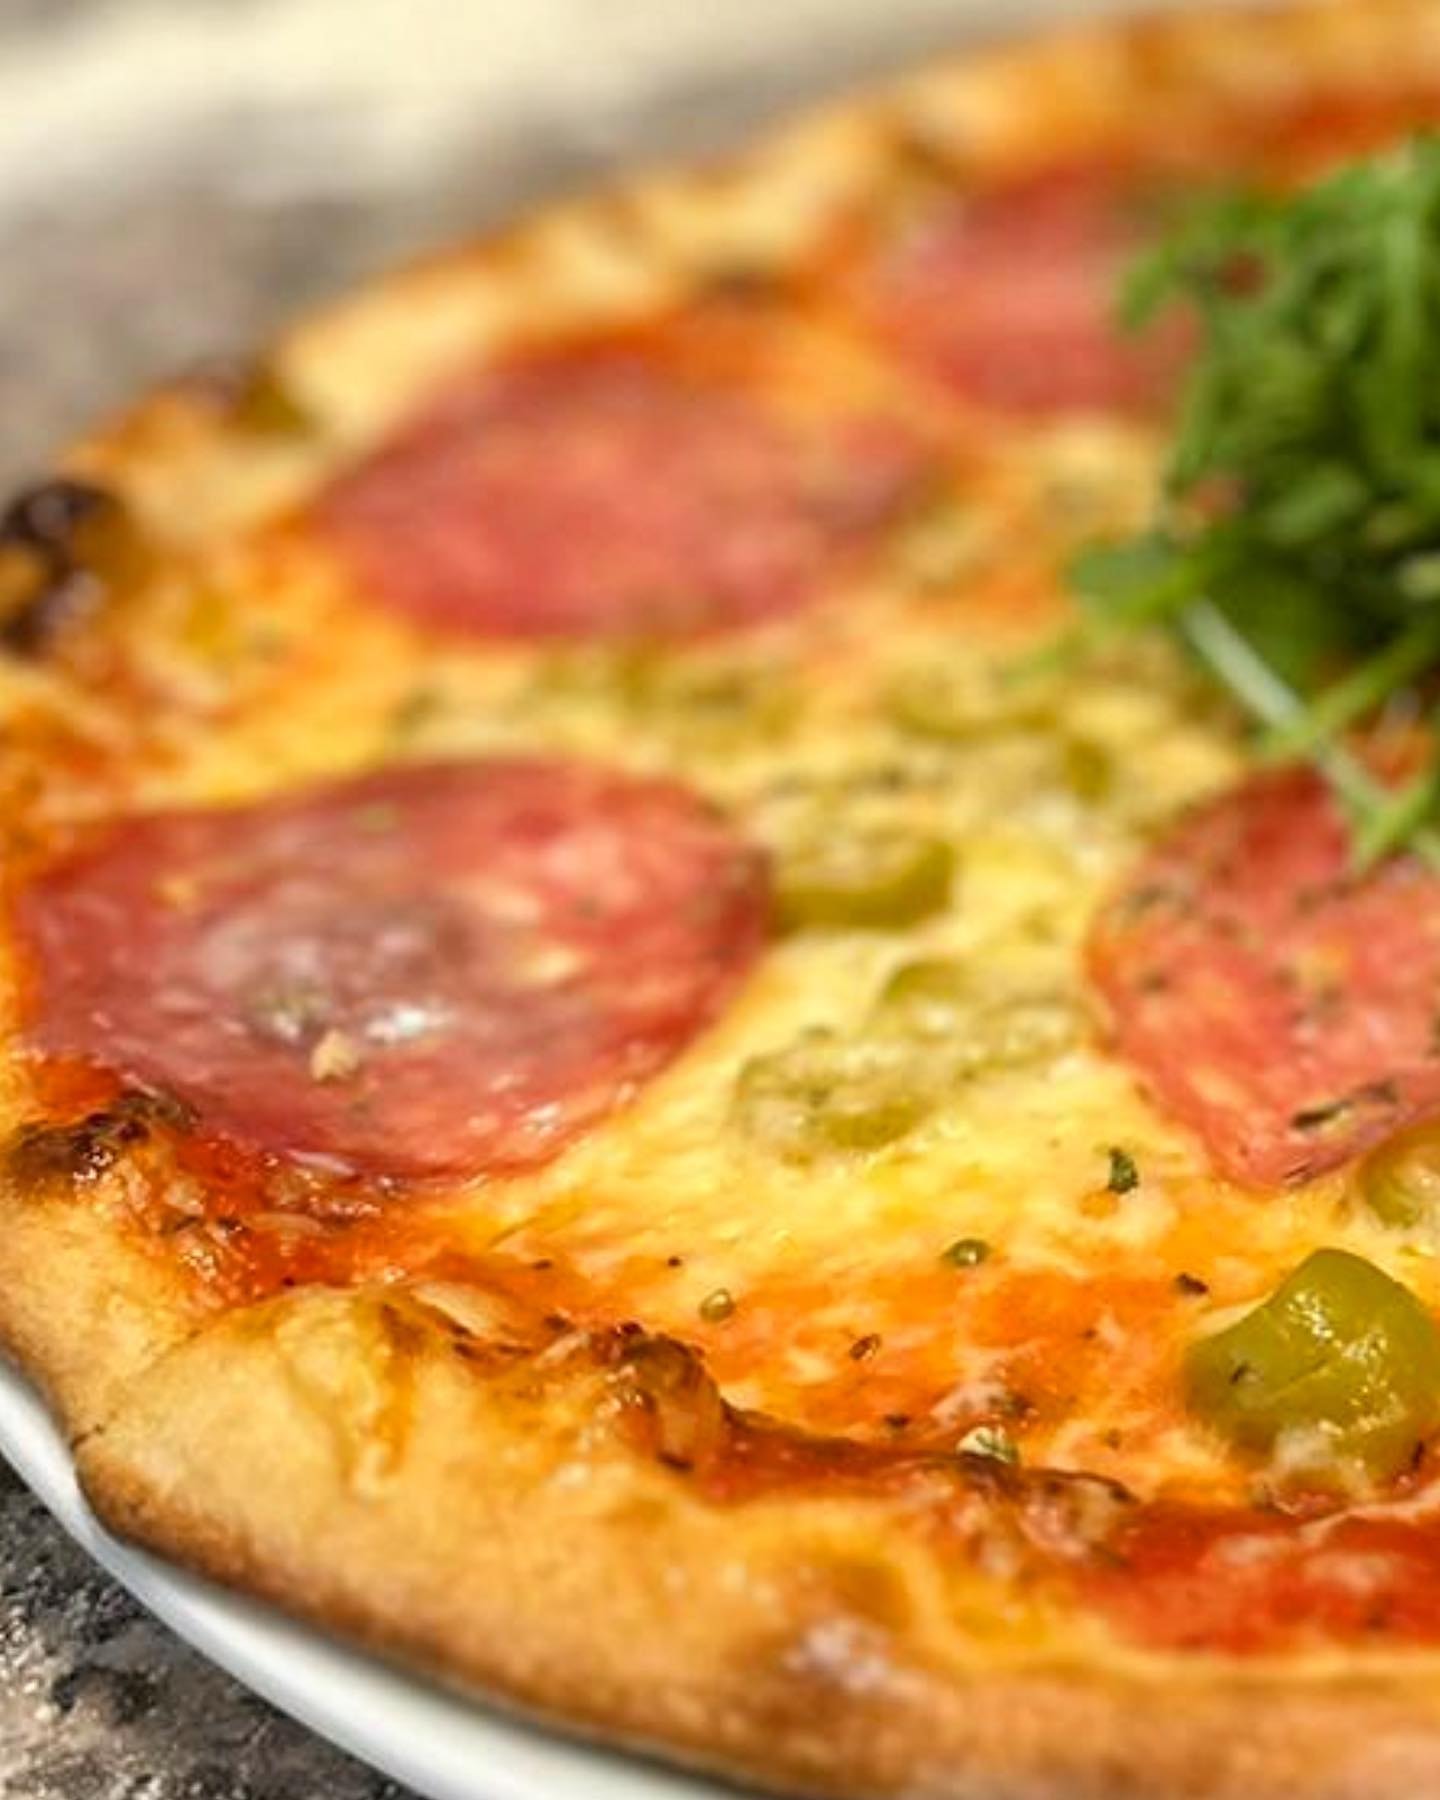 Halv pris på svensk pizza, et nytt konsept hos Slice Pizza i Oslo Sentrum (5 av 10)